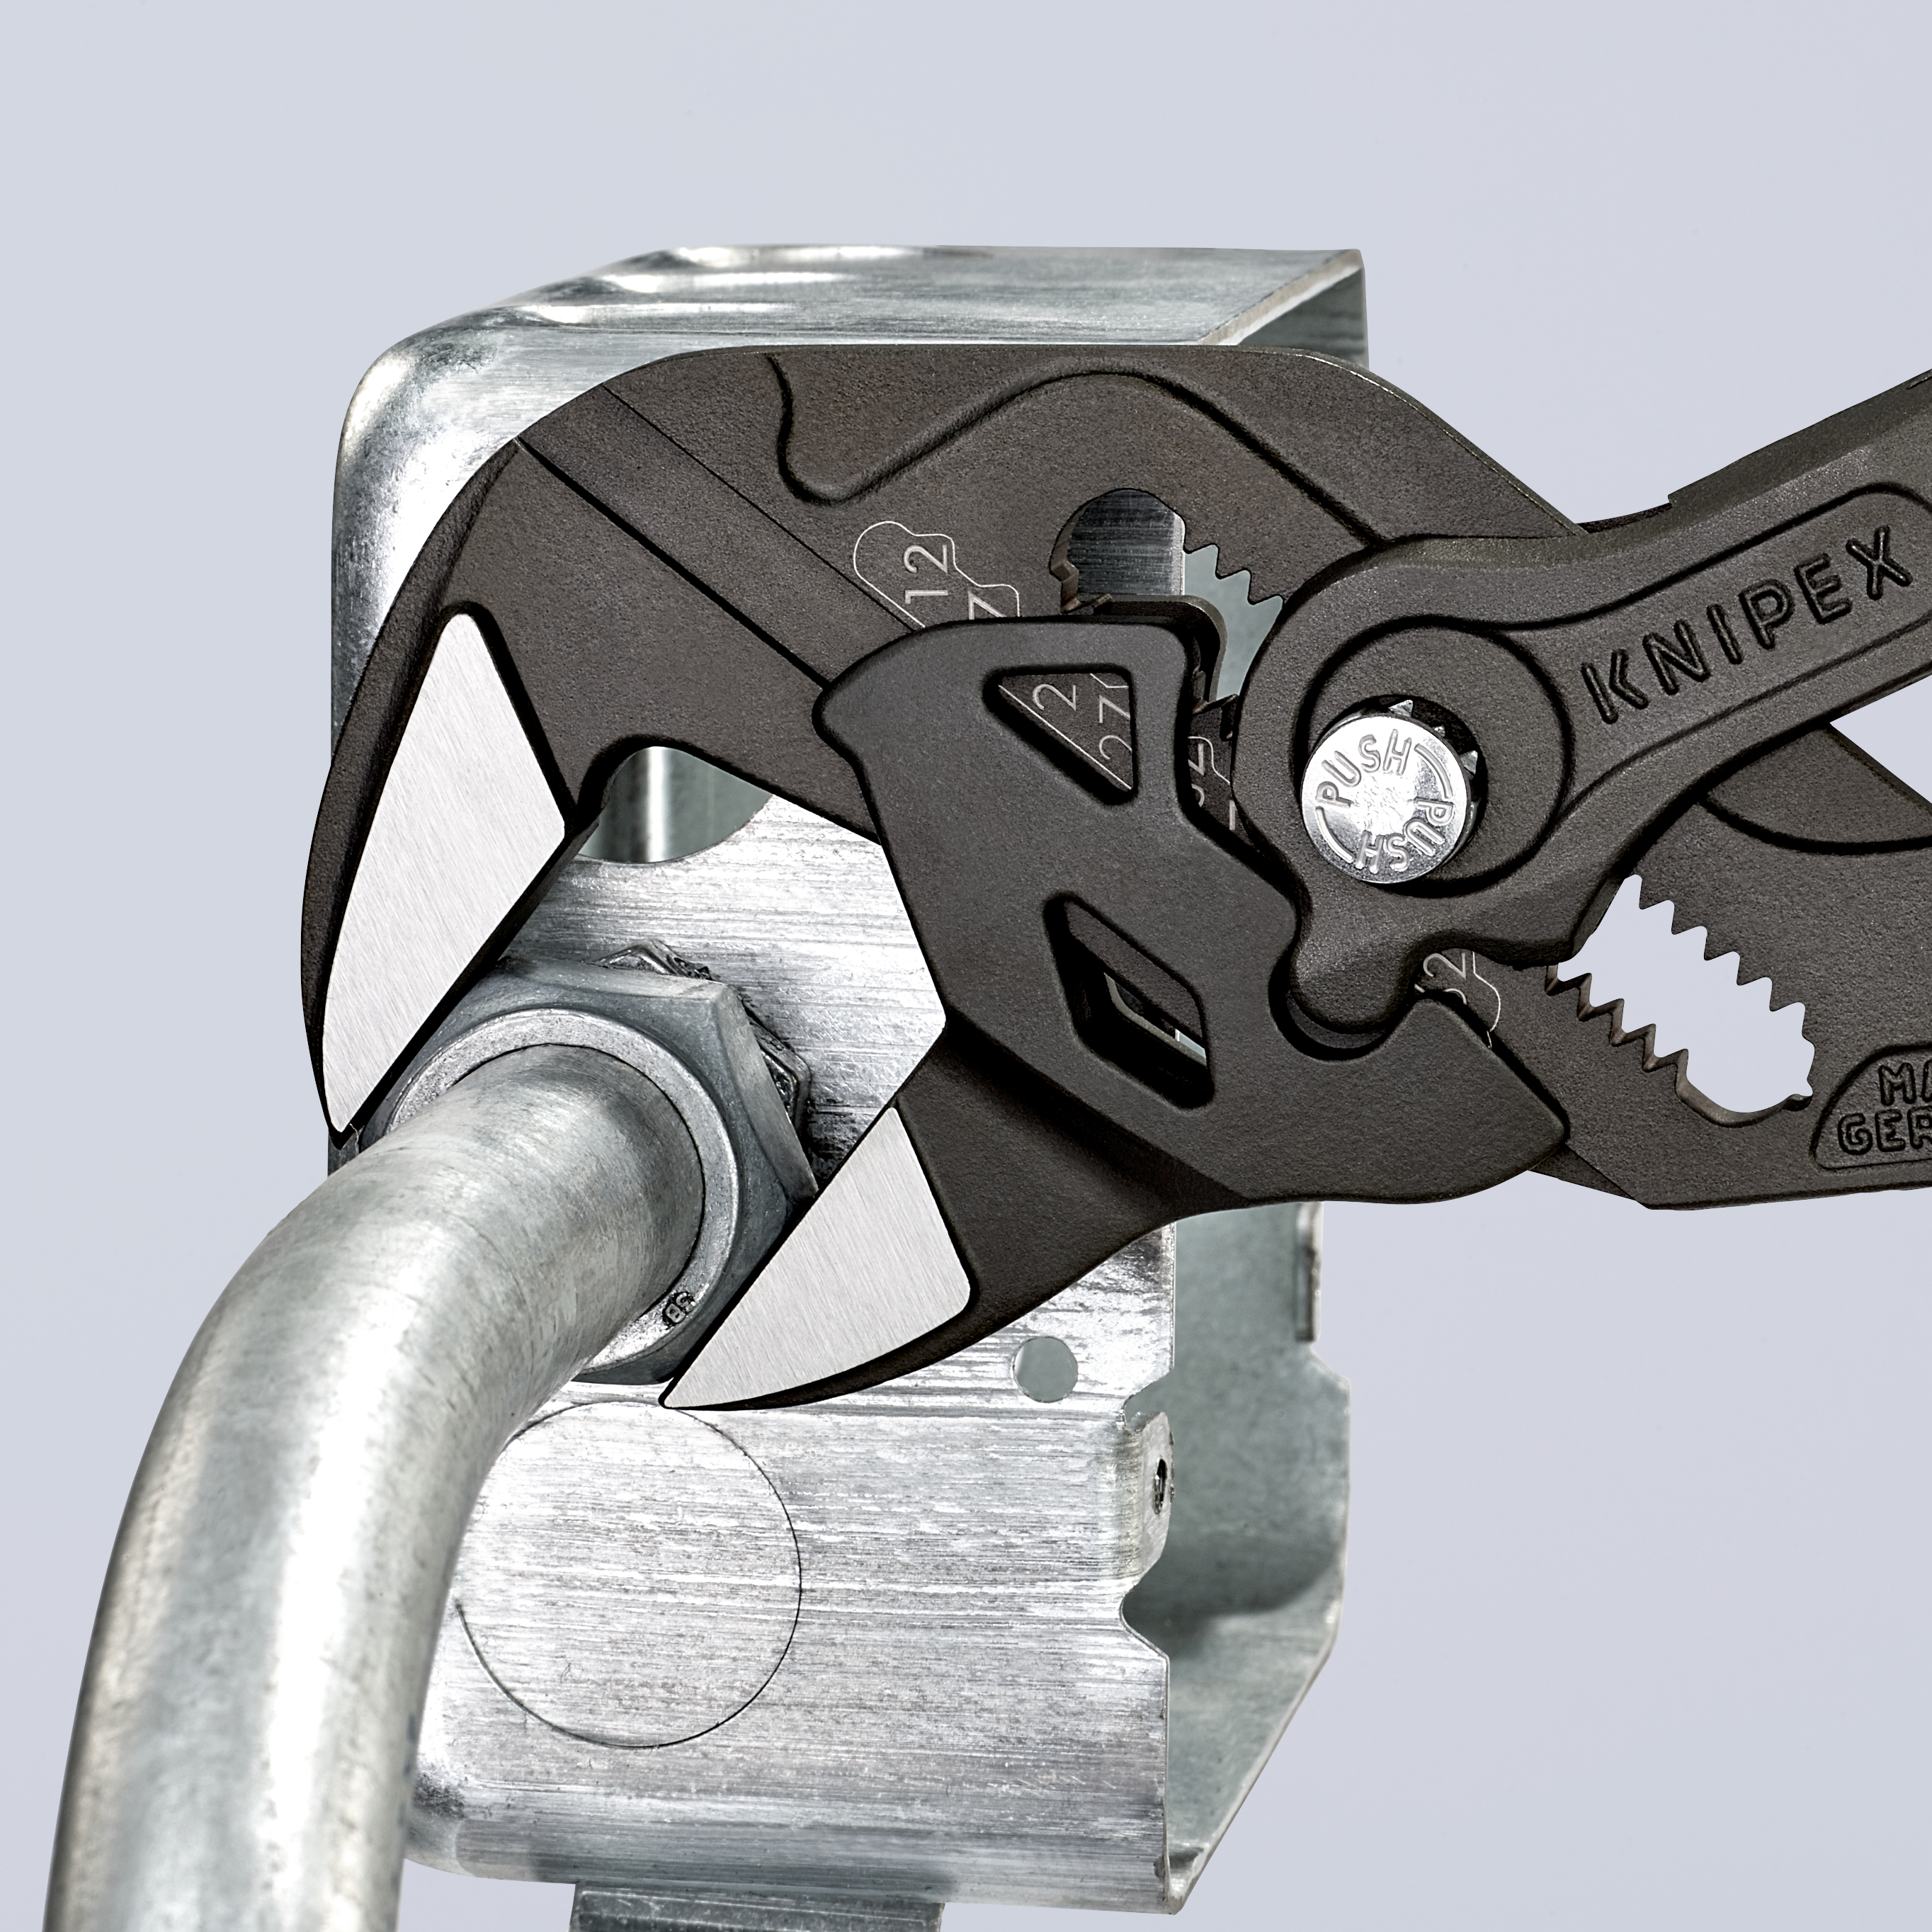 KNIPEX Zangenschlüssel Zange und Schraubenschlüssel in einem Werkzeug mit rutschhemmendem Kunststoff